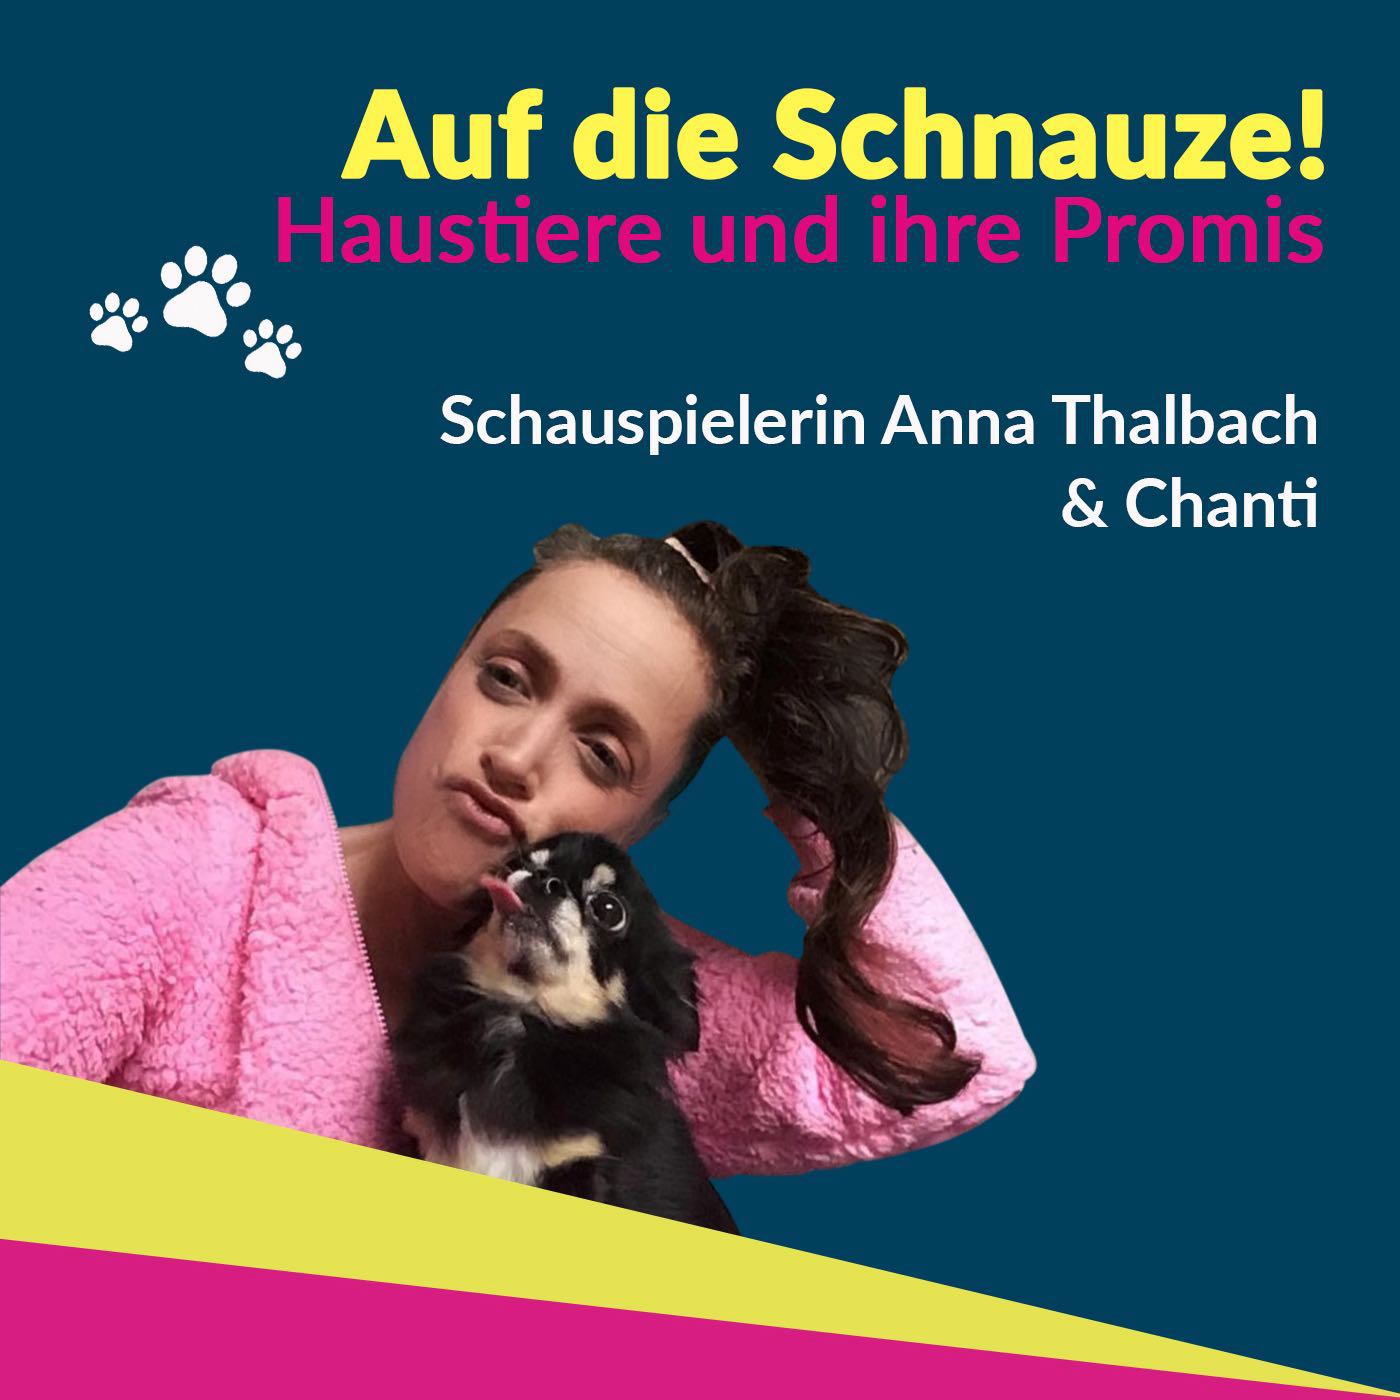 Anna Thalbach und Chanti - zwei Berliner Schnauzen wollen weg vom Tussi-Image